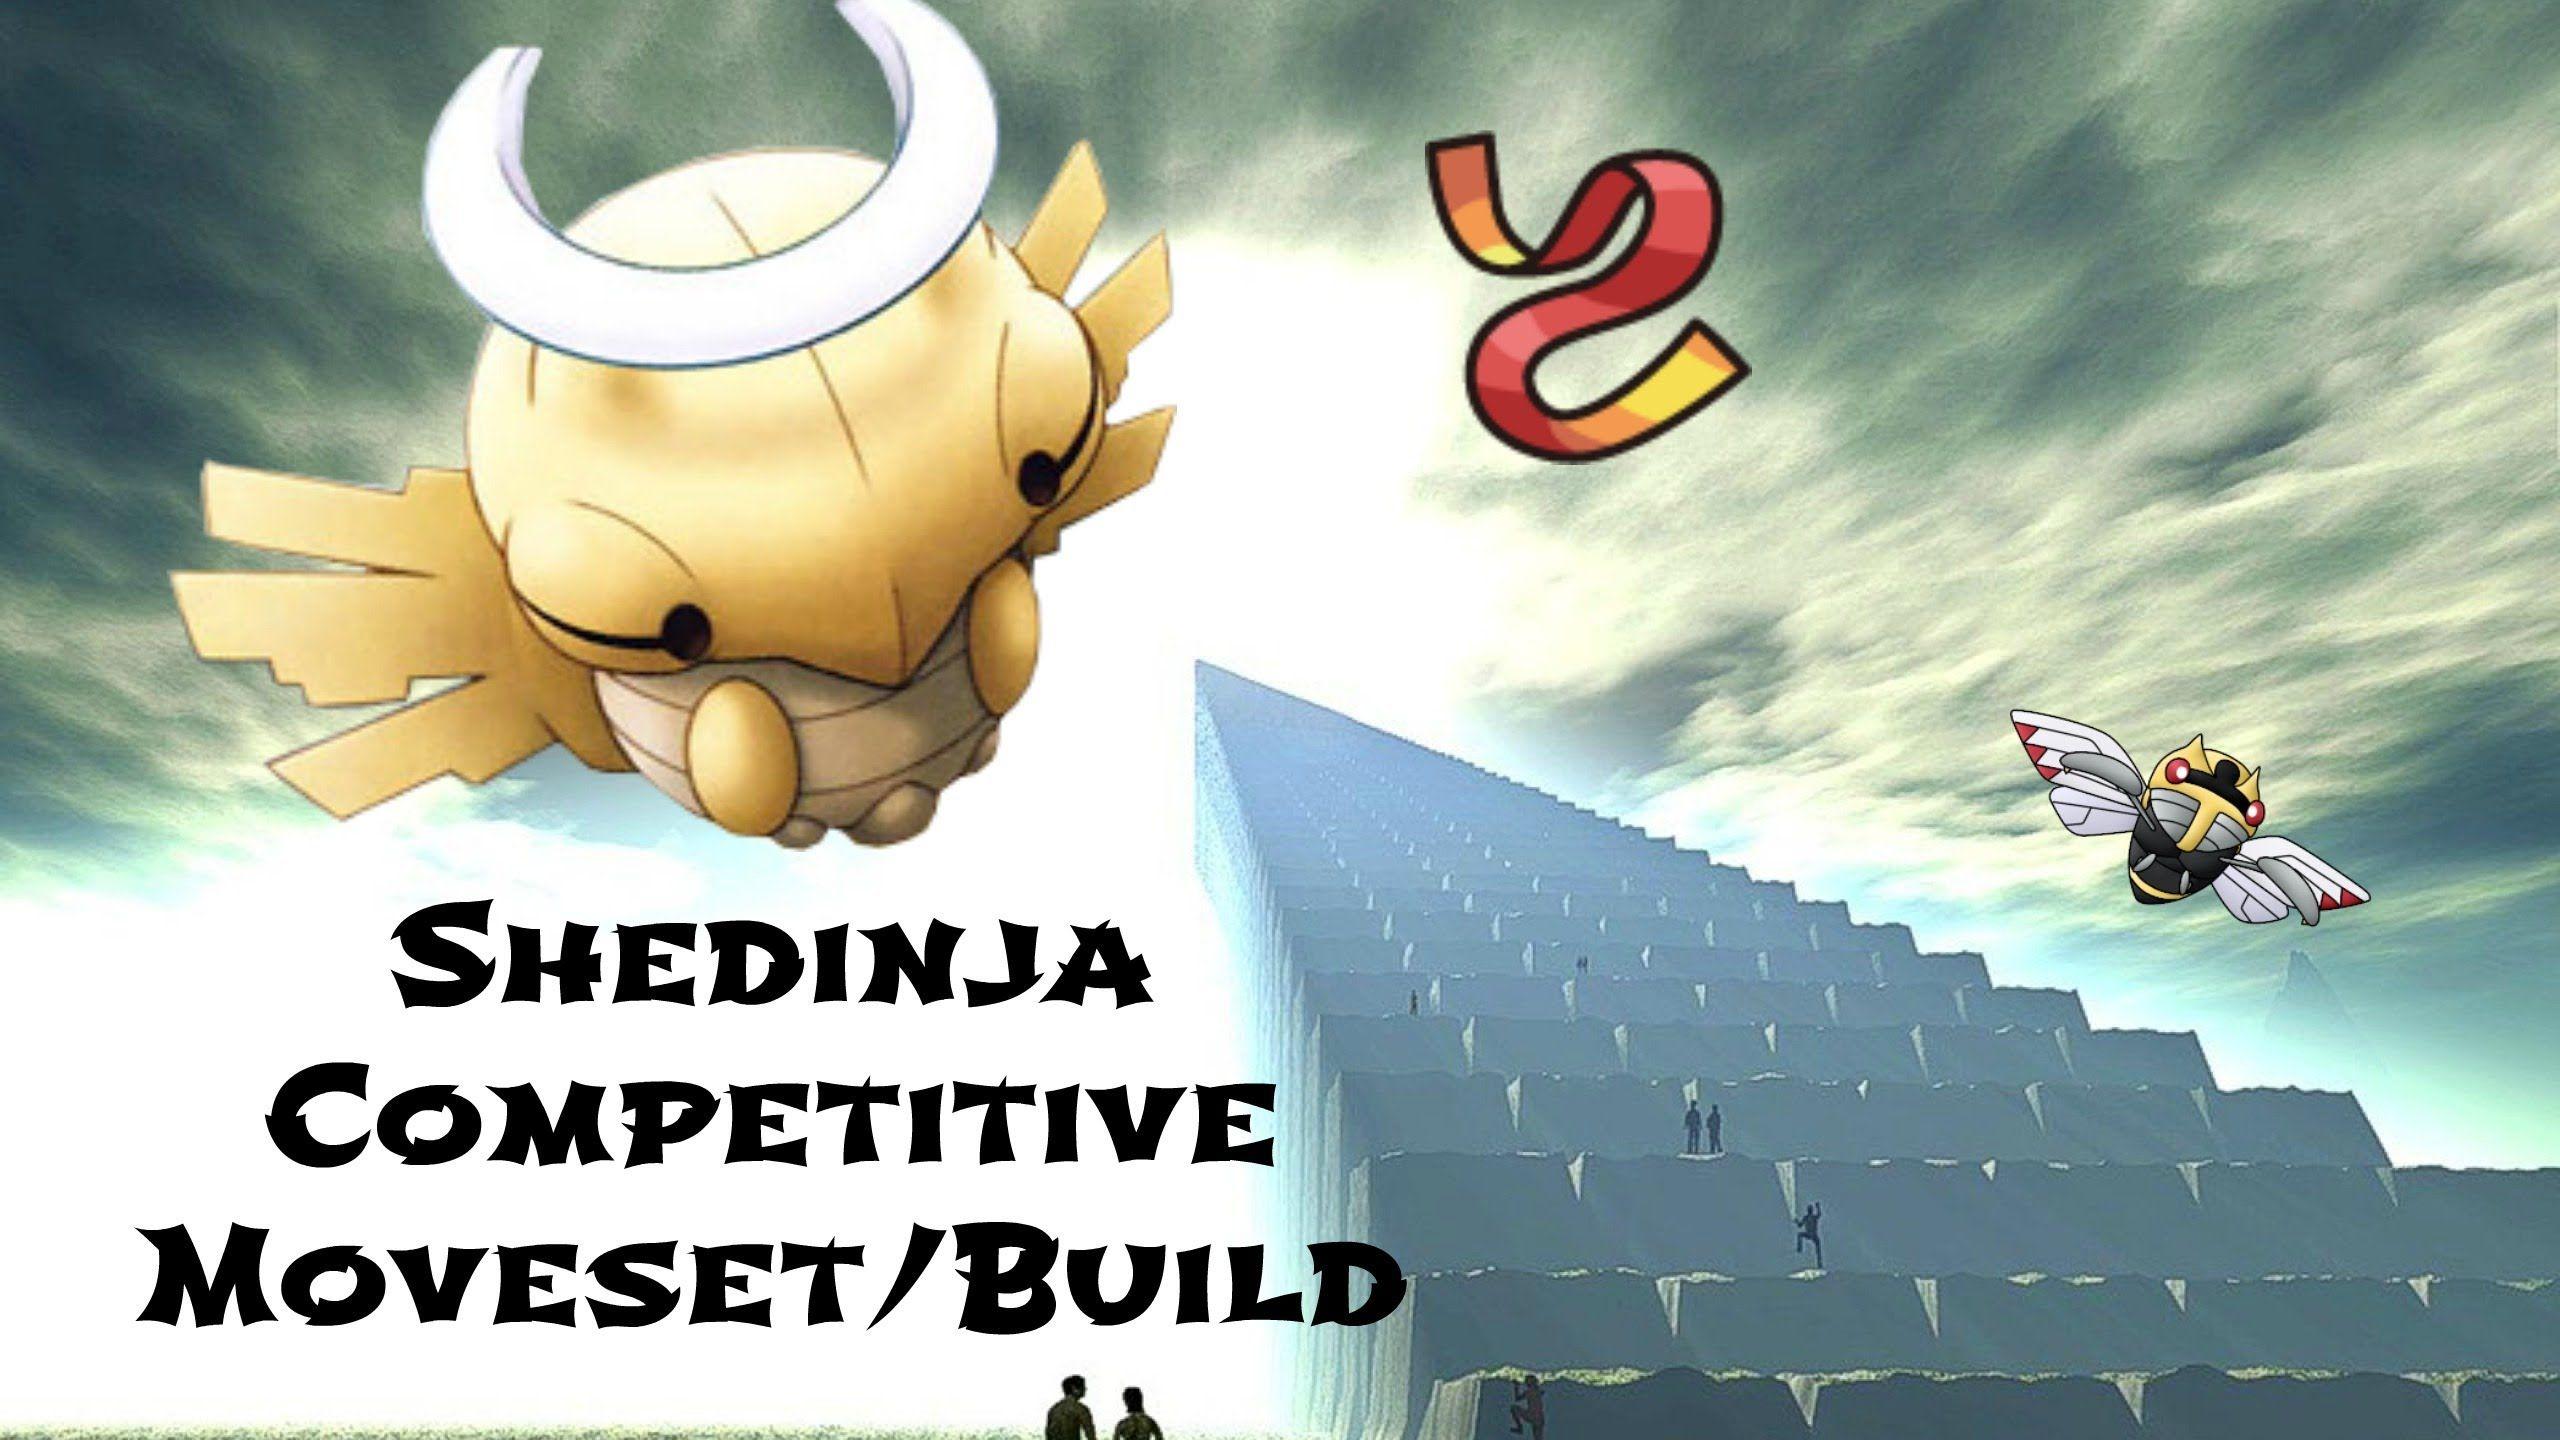 Shedinja Pokemon XY Competitive Moveset Build! Sash!